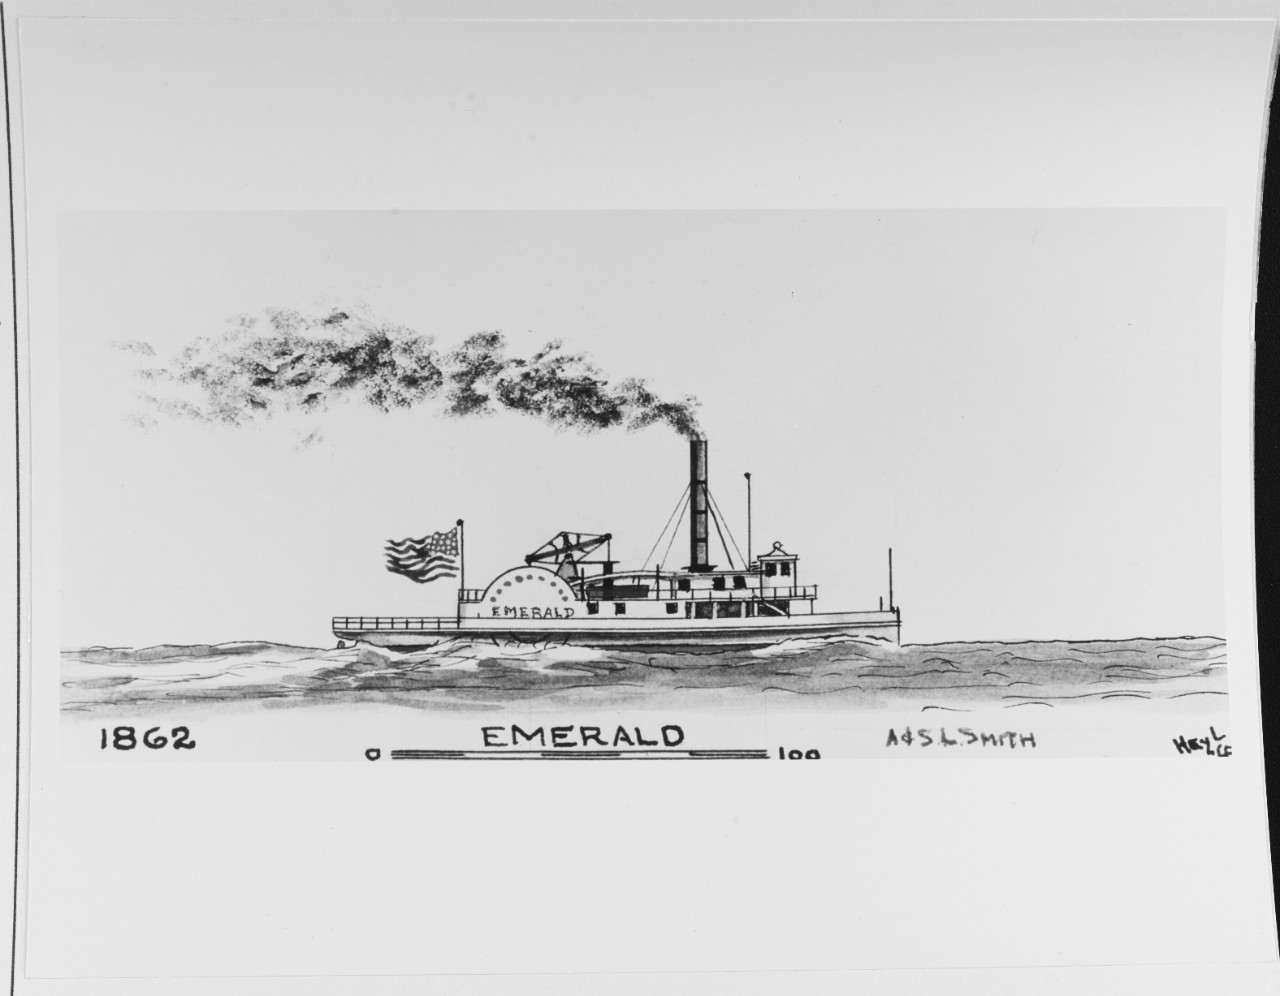 EMERALD (American merchant steamer, 1862-1902)